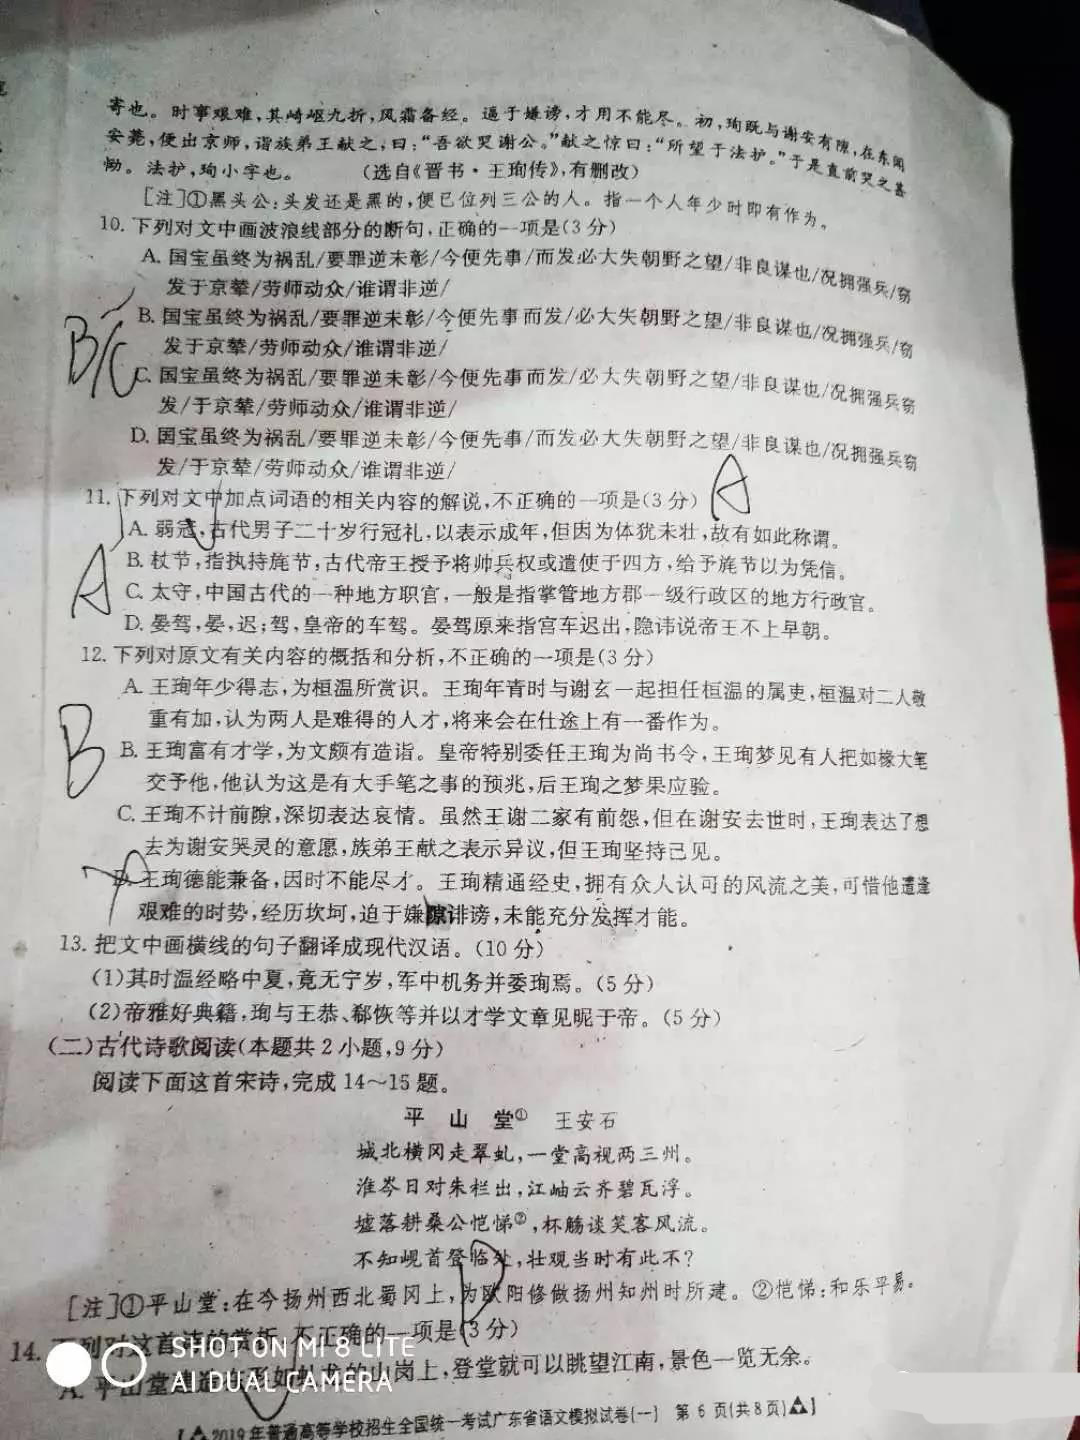 2019普通高等学校招生统一考试广东省语文第一次模拟考试试题与答案较新公布!